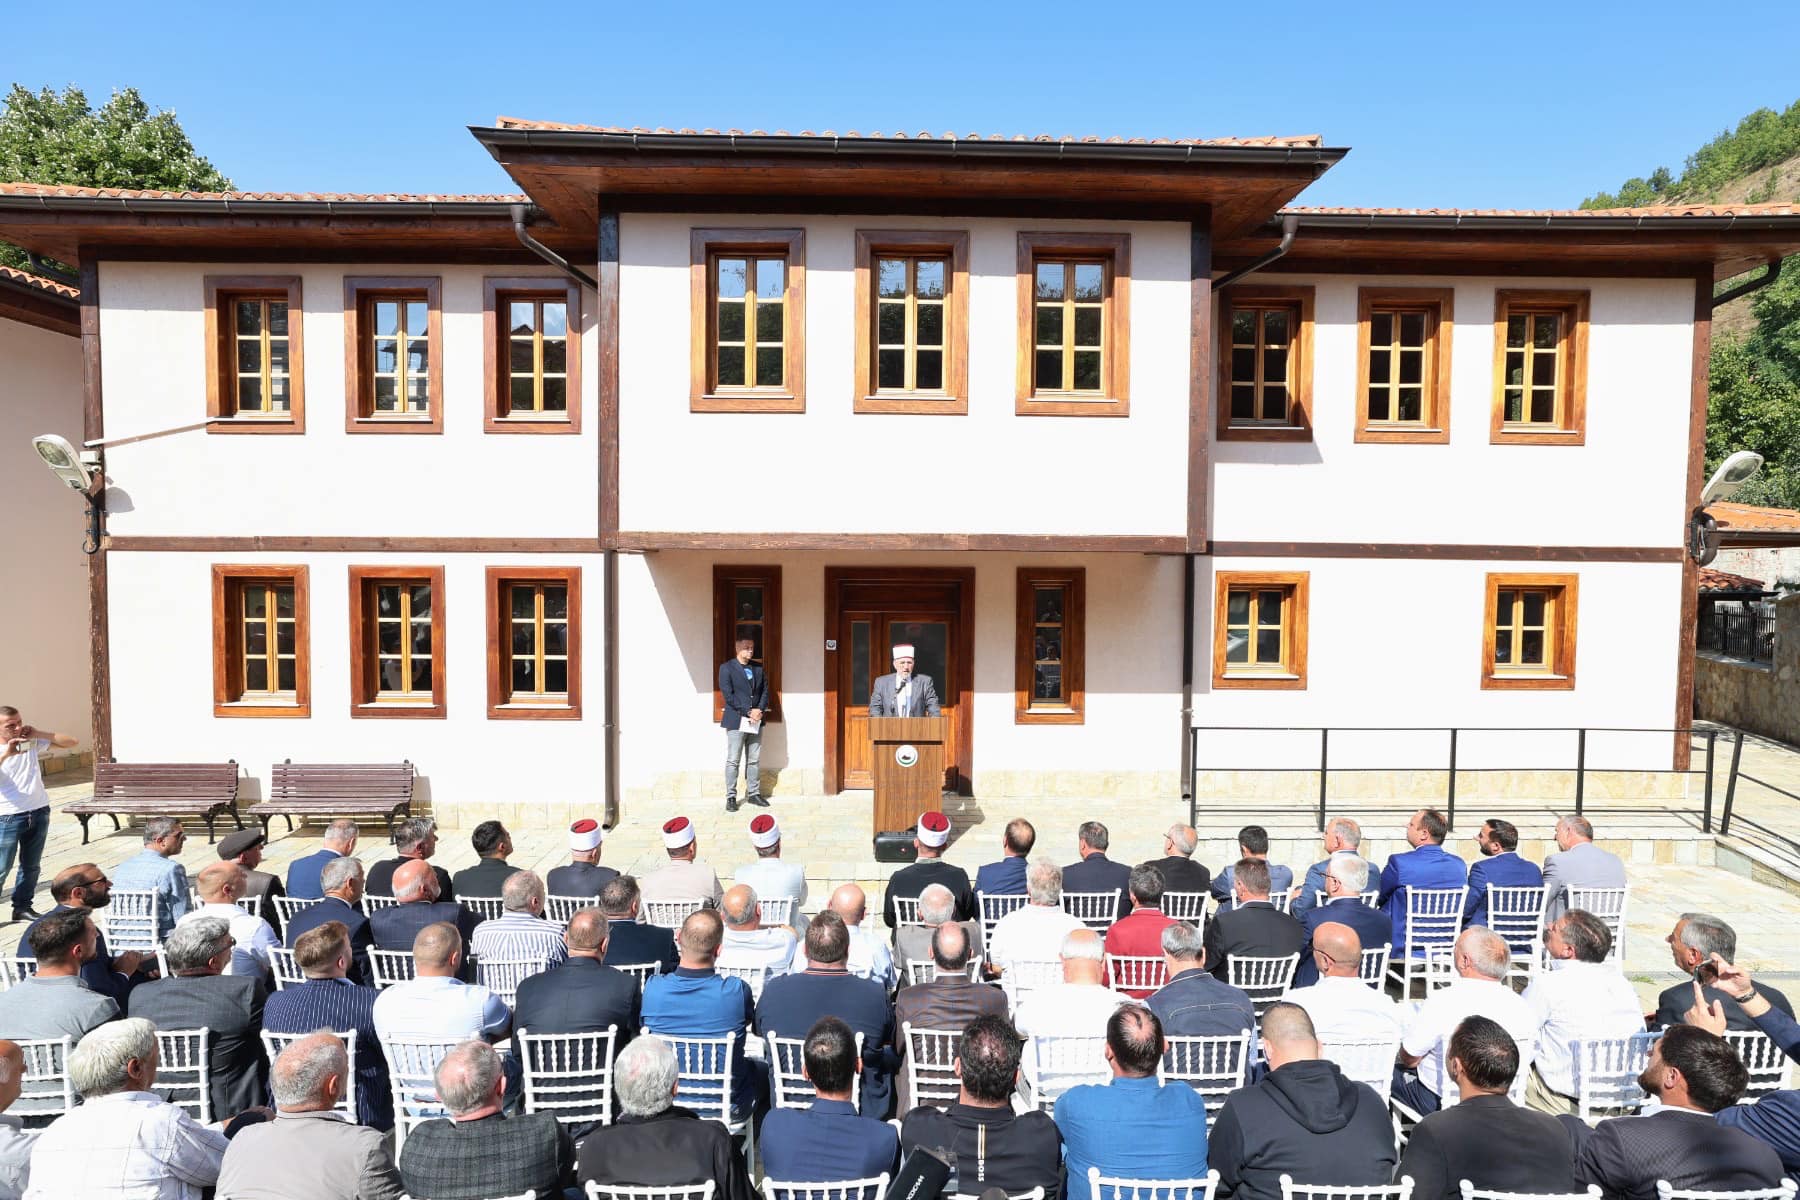 في الذكرى السابعة لرحيله تم افتتاح المكتبة الخاصة بالعالم الألباني "عرفان أفندي بيكليتشيت"، في مبنى ملحق بمسجد مسجد "يانيفيا"، الذي عمل به كإمام لعشرات السنين.